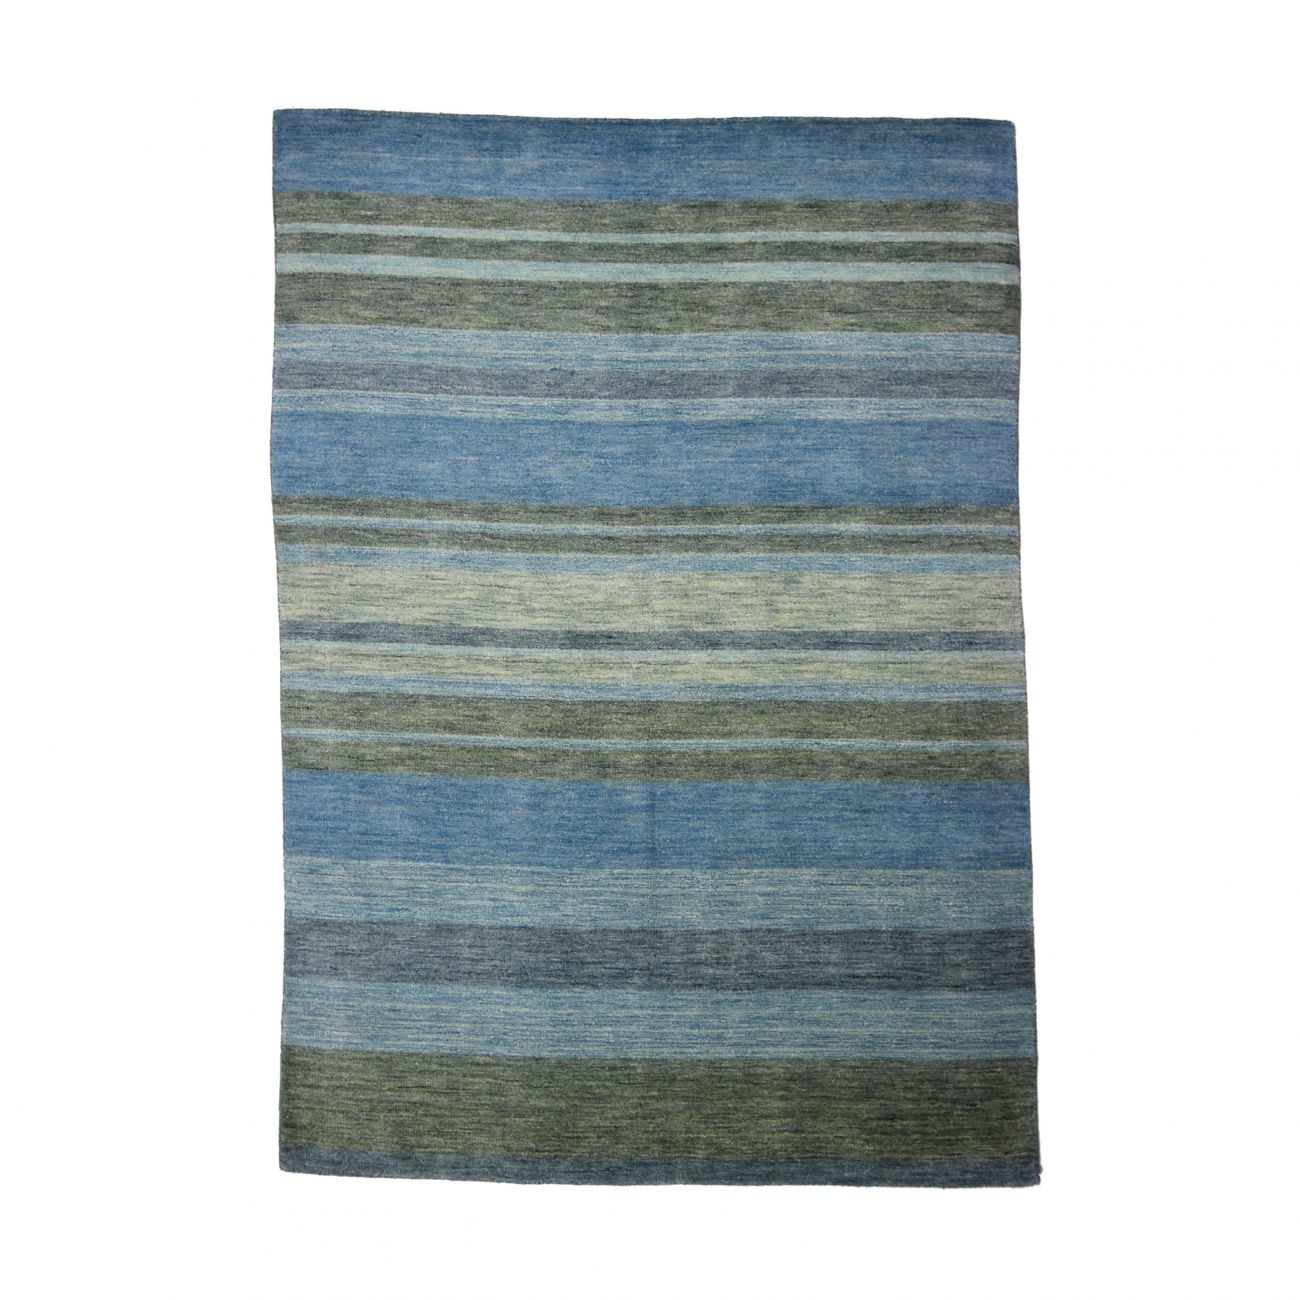 Handloom 233 x 164cm Wool India Rug